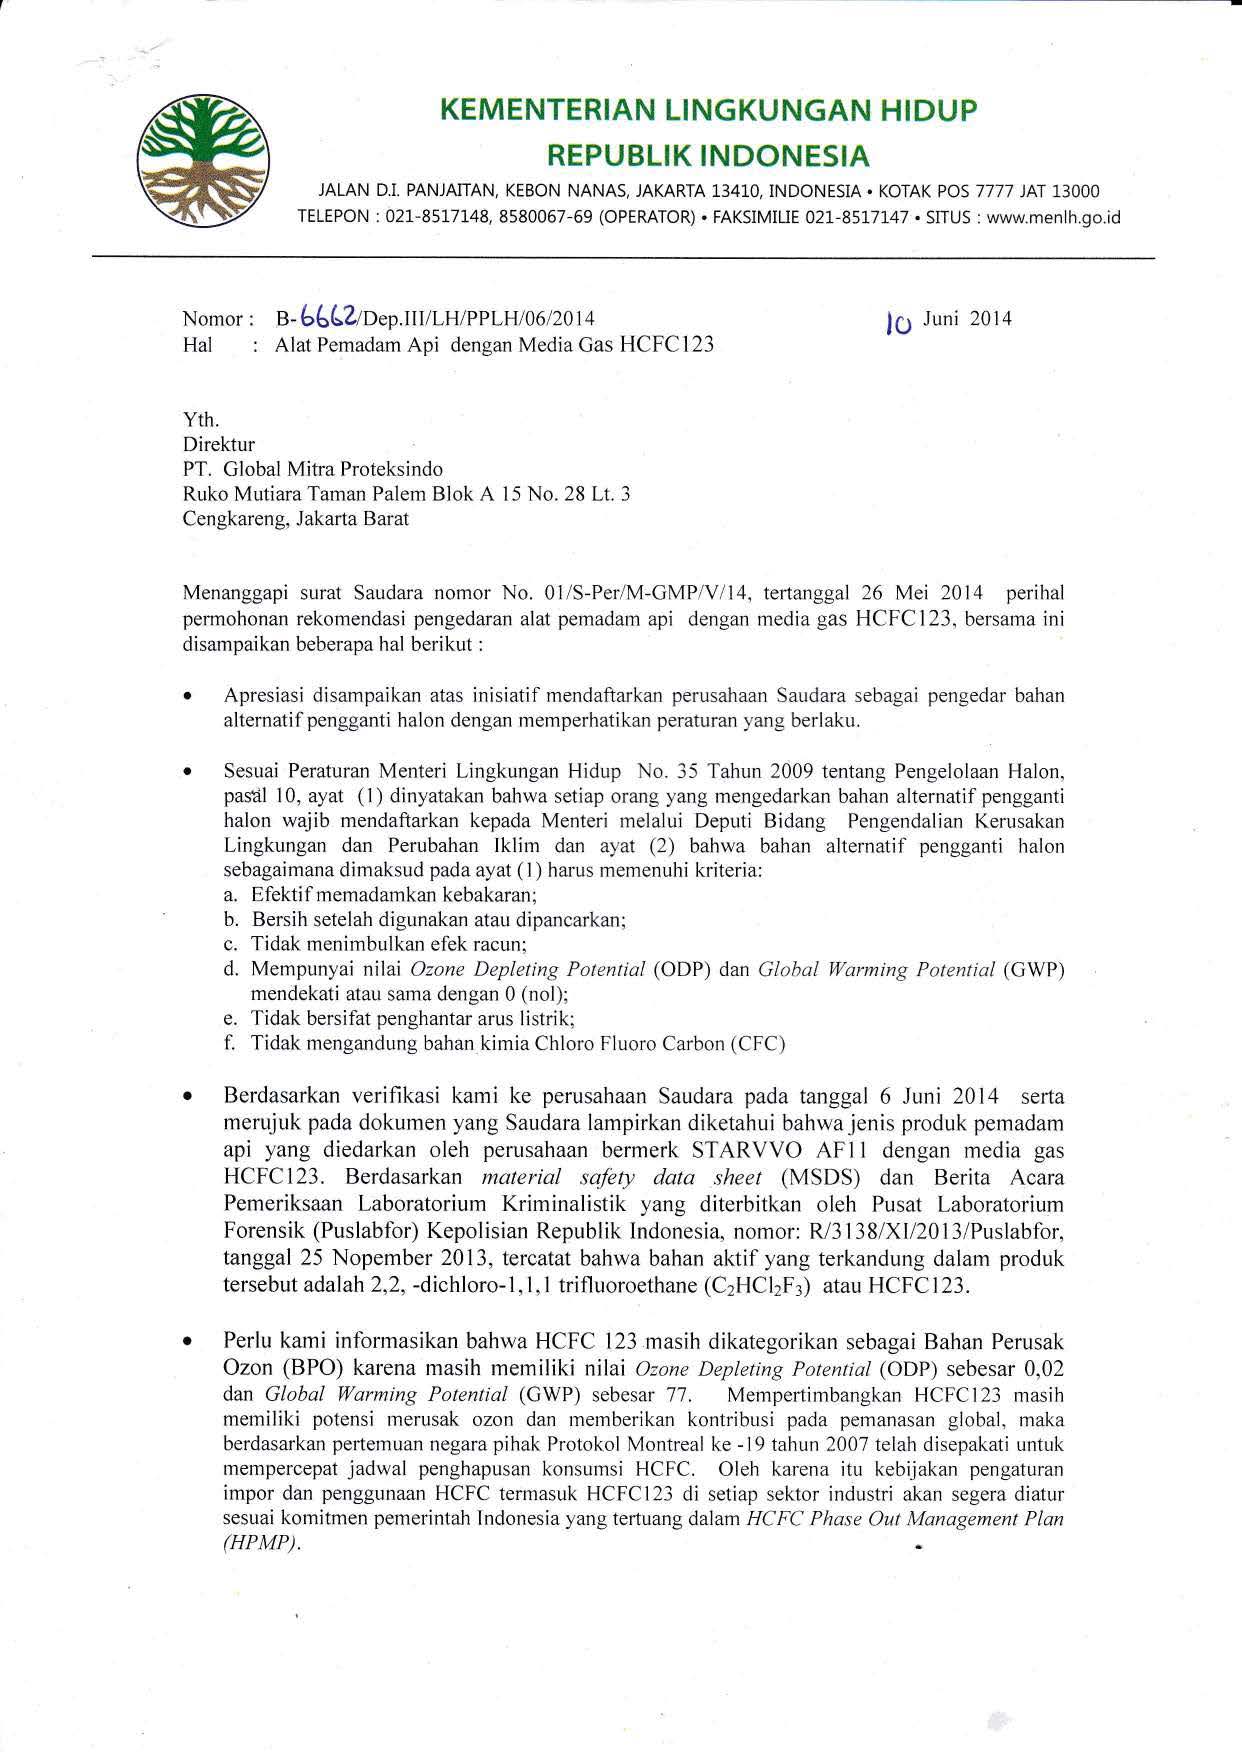 Surat rekomendasi kementerian lingkungan hidup tabung pemadam api Starvvo AF11